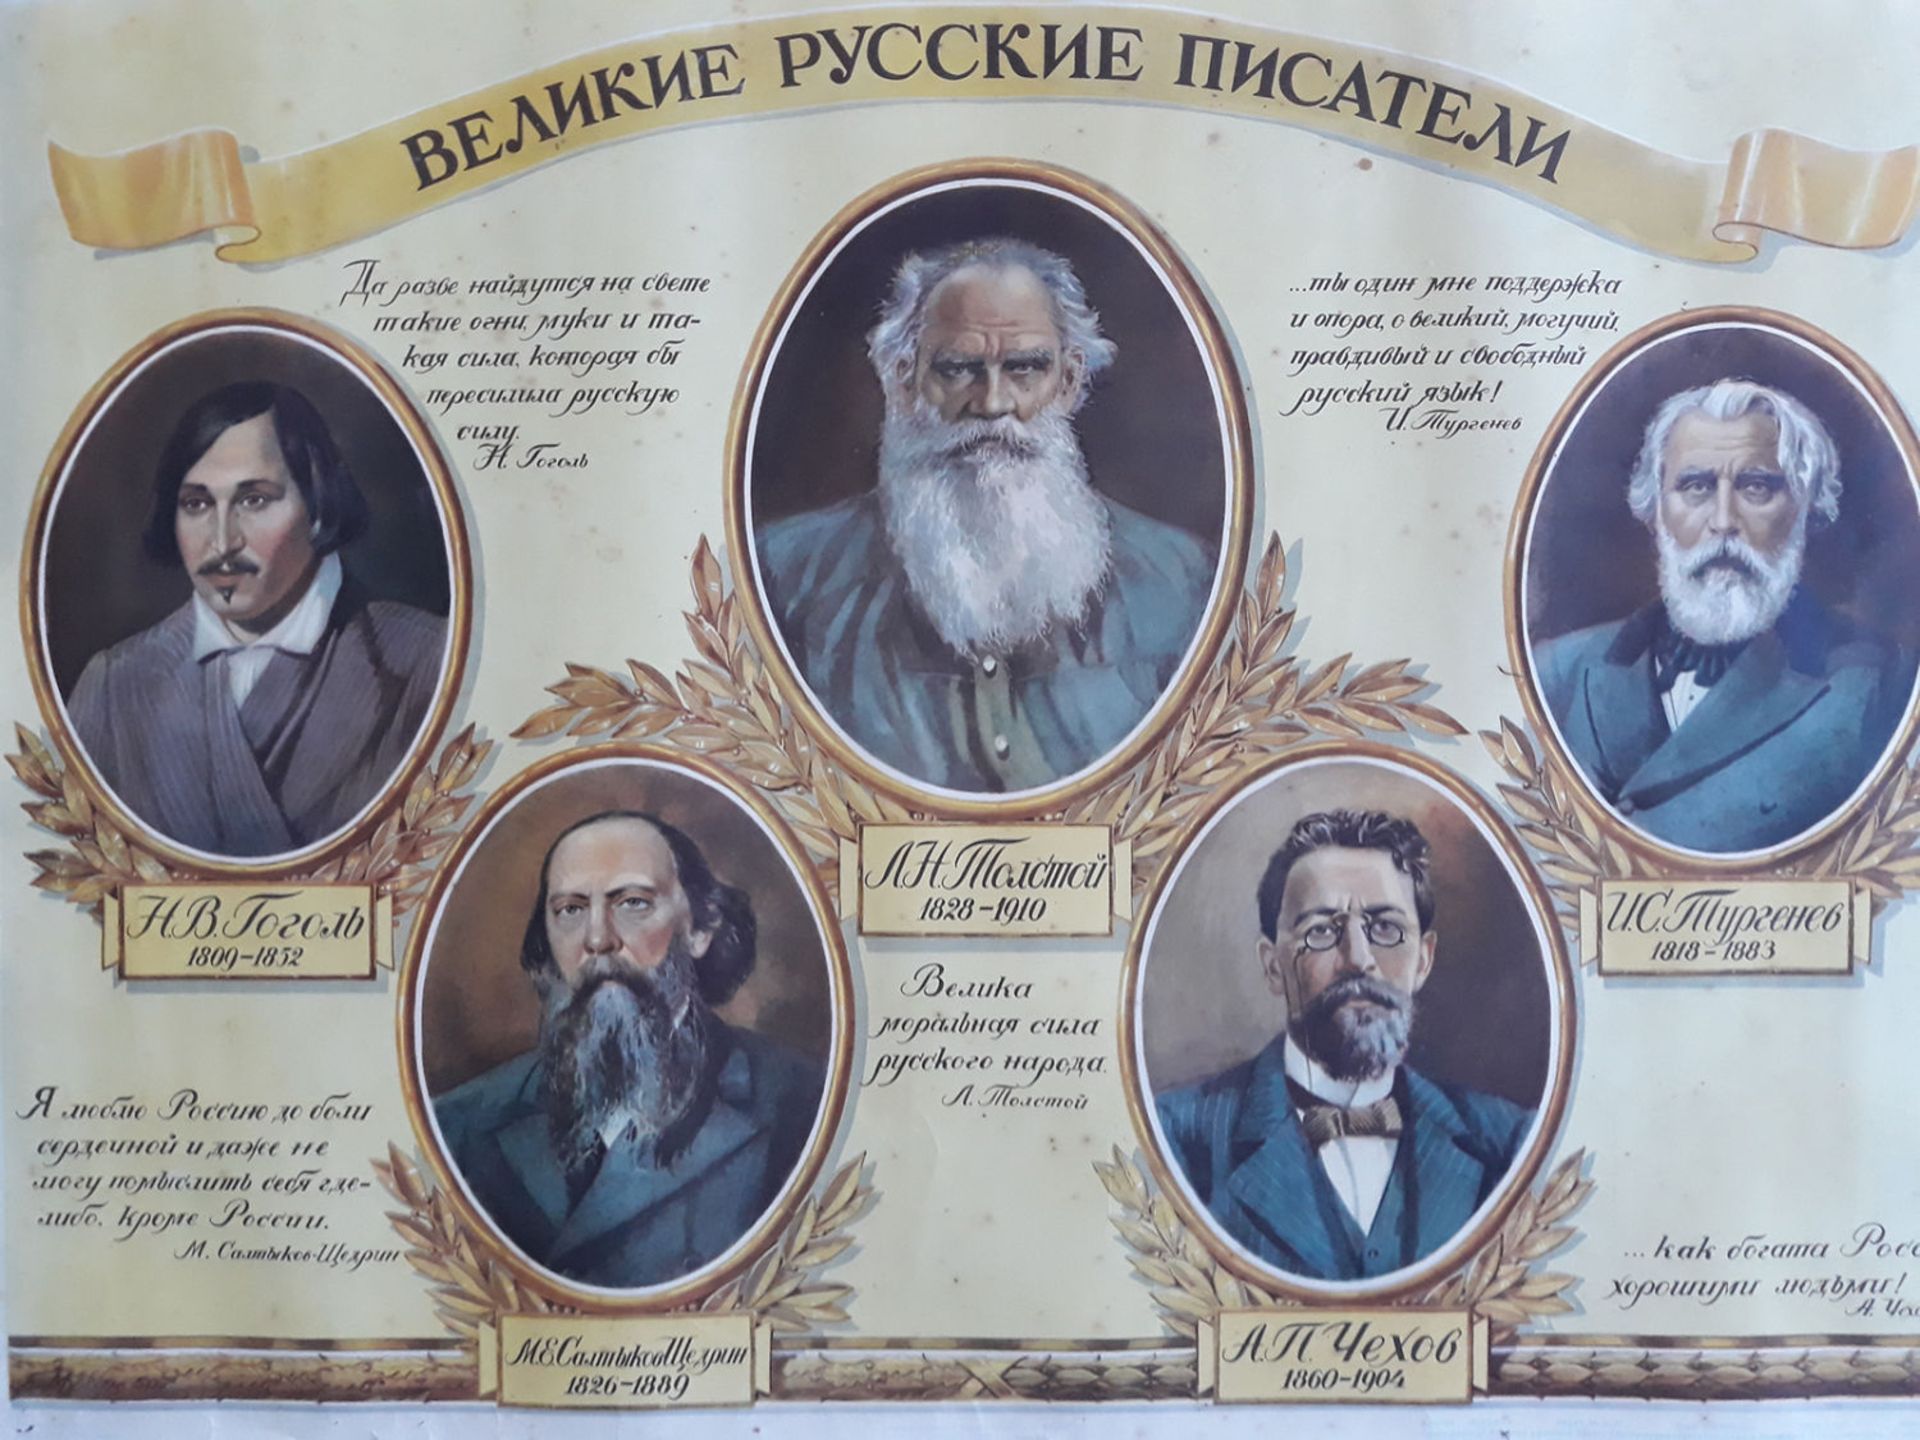 [Soviet art]. Mukhin, B. "Great russian writers".